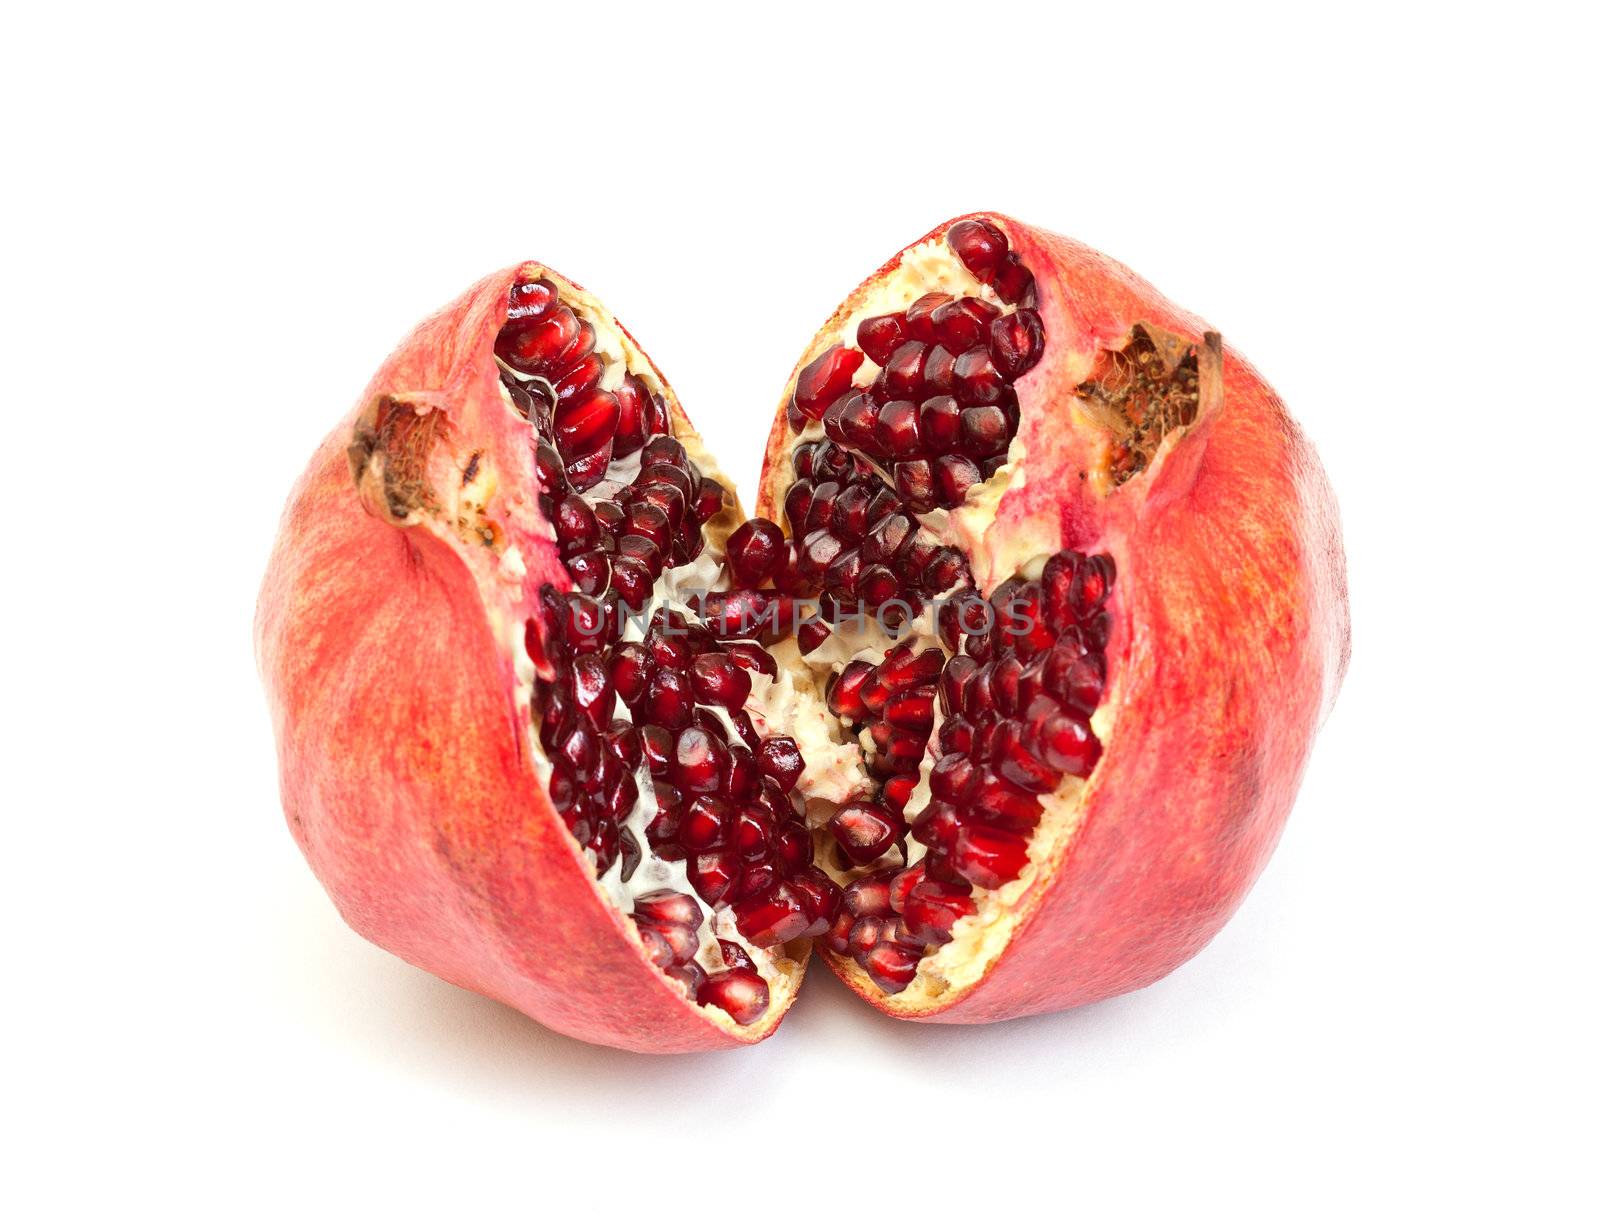 Broken pomegranate fruit by Discovod